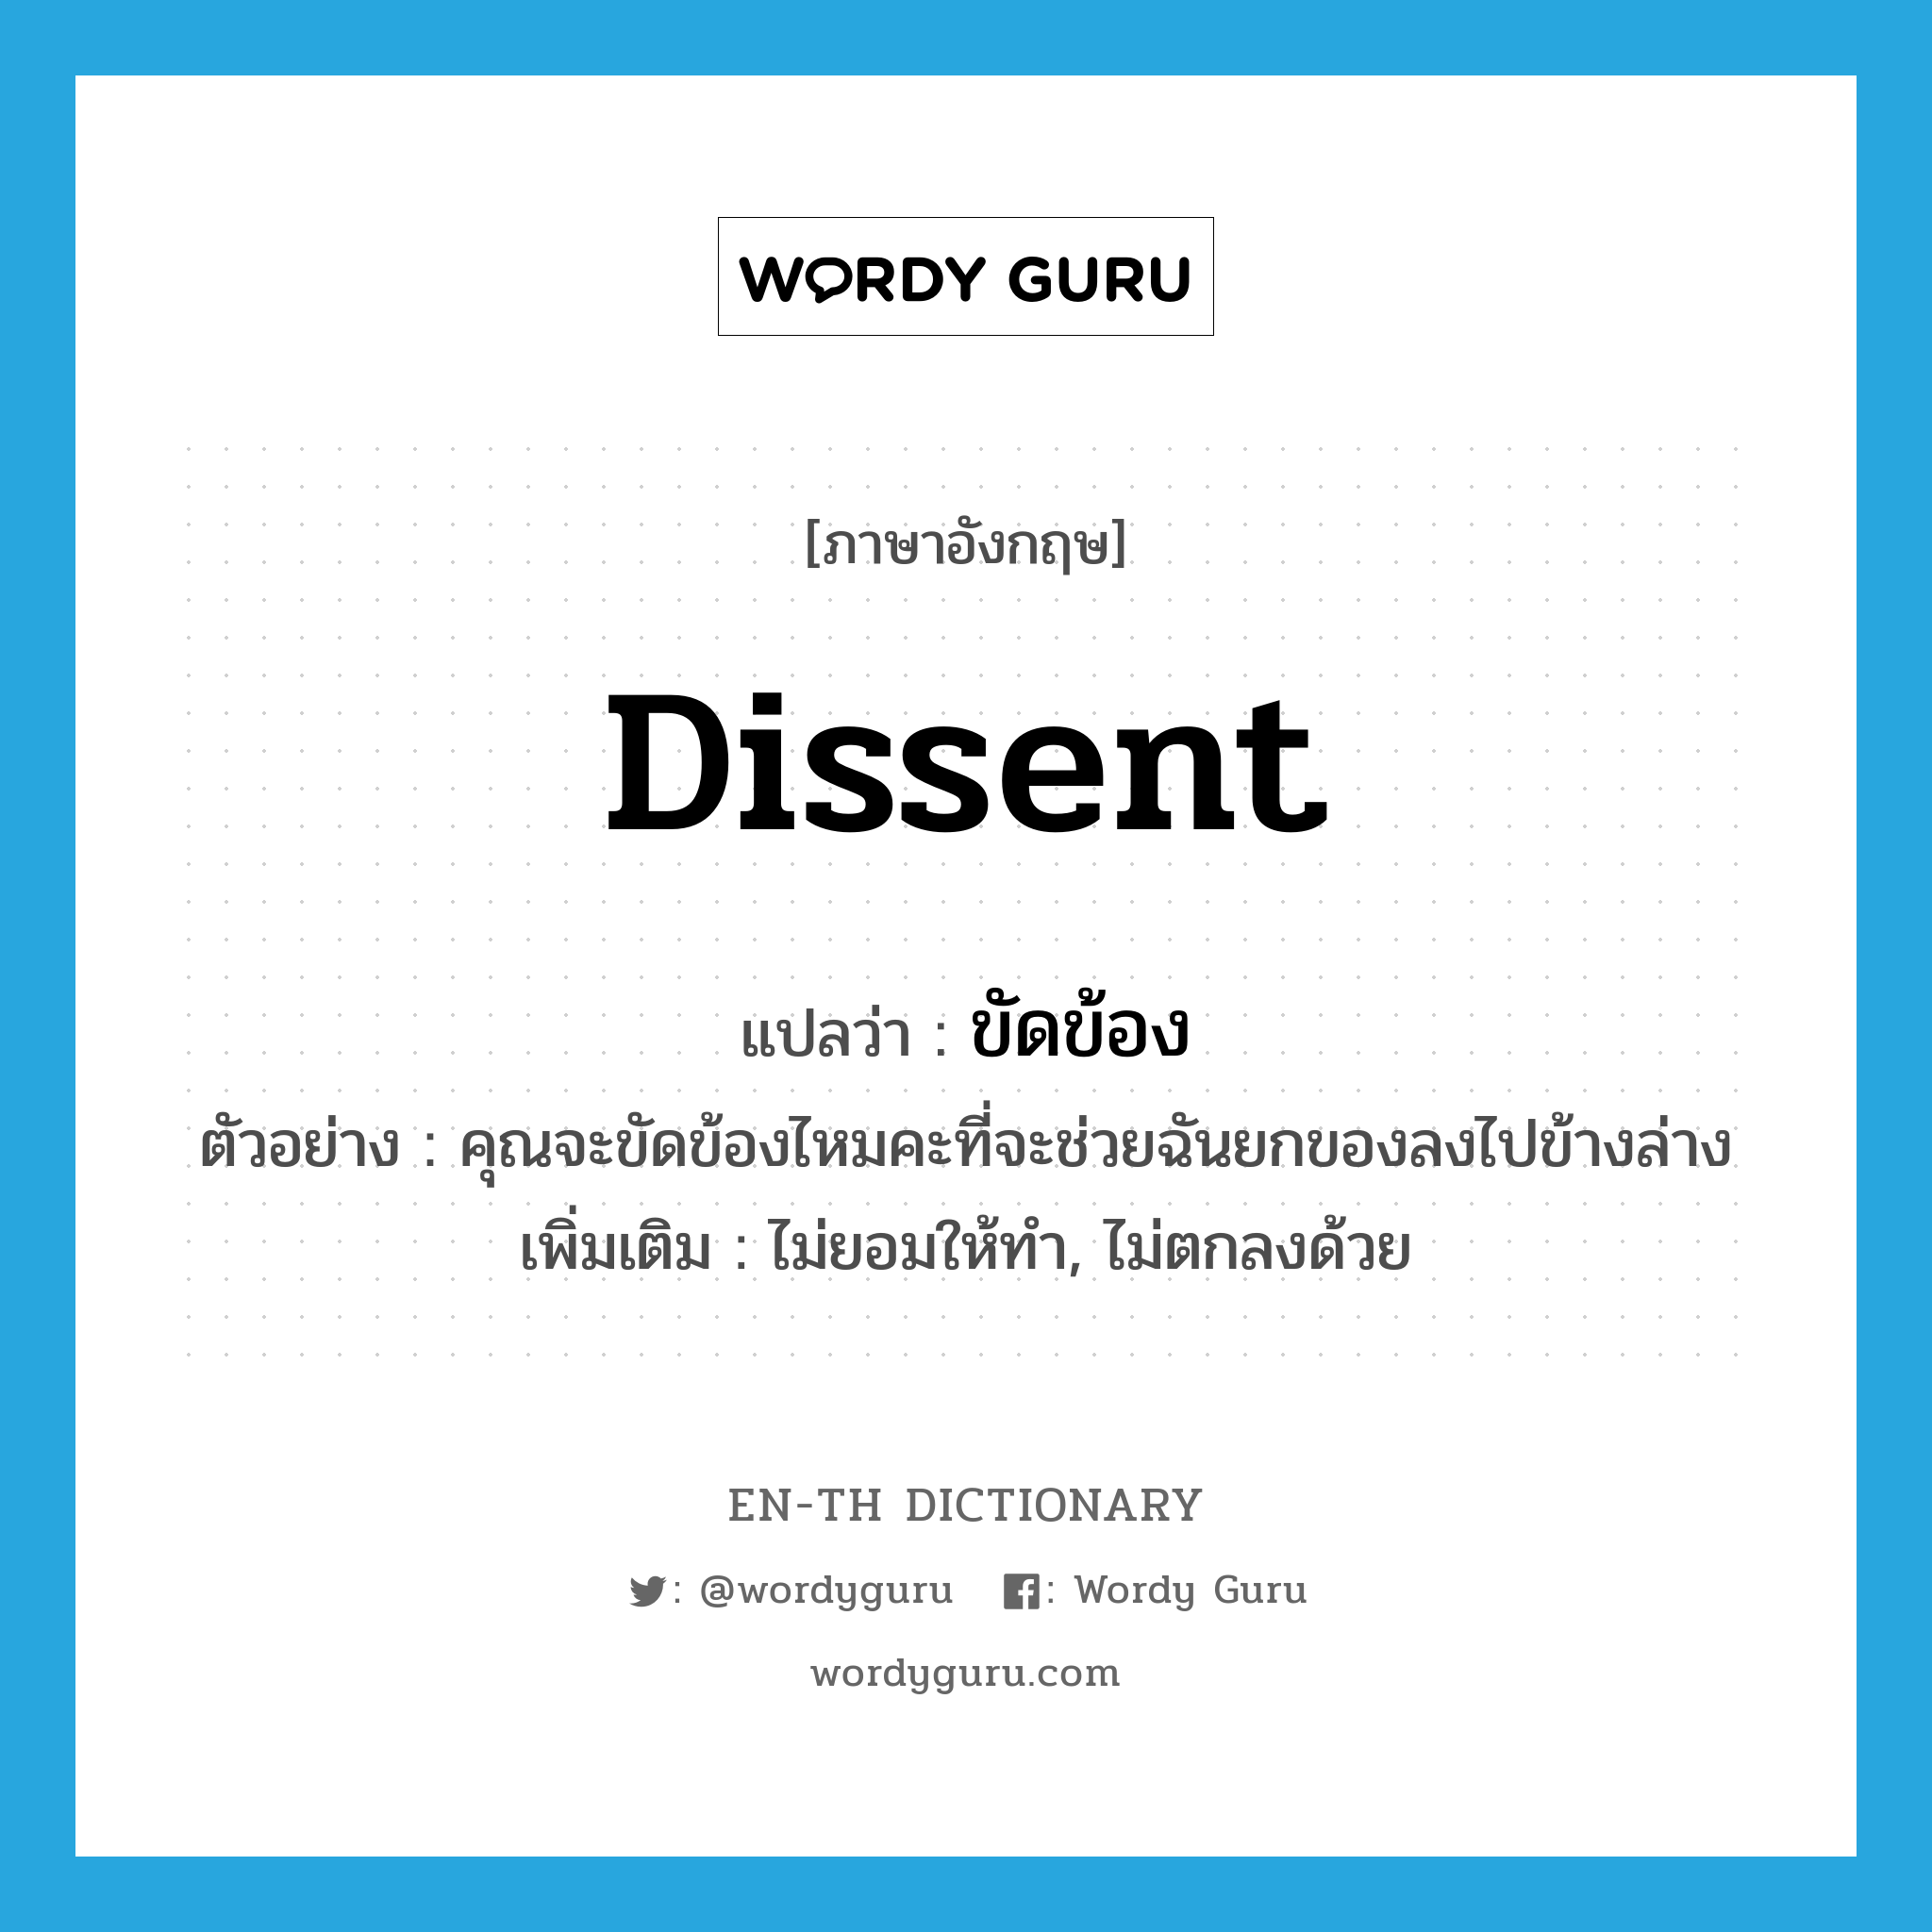 dissent แปลว่า?, คำศัพท์ภาษาอังกฤษ dissent แปลว่า ขัดข้อง ประเภท V ตัวอย่าง คุณจะขัดข้องไหมคะที่จะช่วยฉันยกของลงไปข้างล่าง เพิ่มเติม ไม่ยอมให้ทำ, ไม่ตกลงด้วย หมวด V